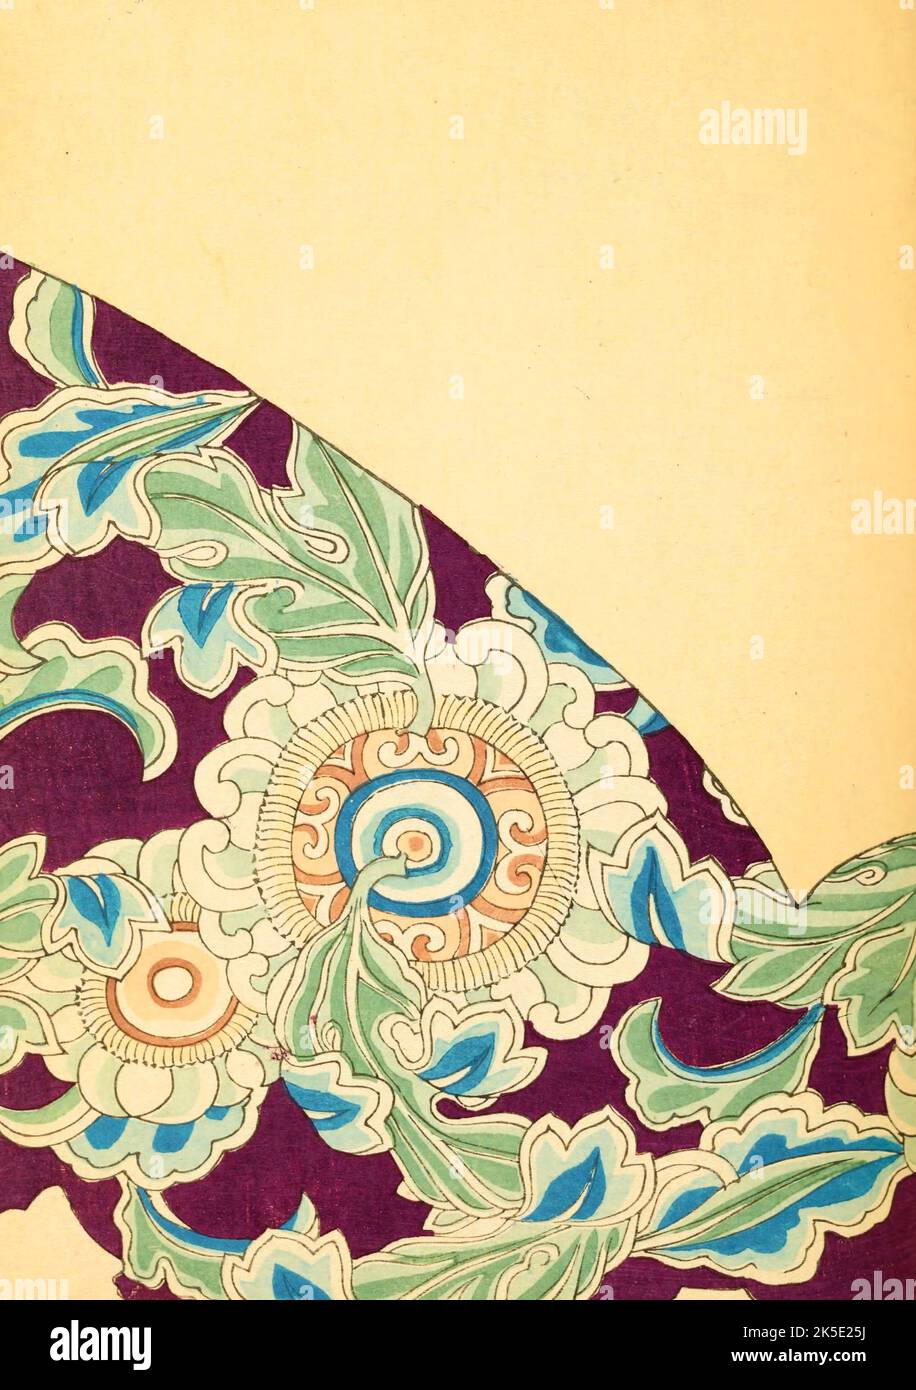 Design con foglie e fiori. La rivista di design Shin-Bijutsukai in lingua giapponese 1901-1902, è stata edita dall'illustratore e designer Korin Furuya (1875-1910) e conteneva i disegni dei migliori artisti del tempo. Un pittore di Meji, Korin insegnò alla Scuola Comunale di Arti e Mestieri, ed era uno dei più importanti stampatori di blocchi di legno del tempo. Una stampa ottimizzata e migliorata da Shin-Bijutsukai Design Magazine, Volume 1. Foto Stock